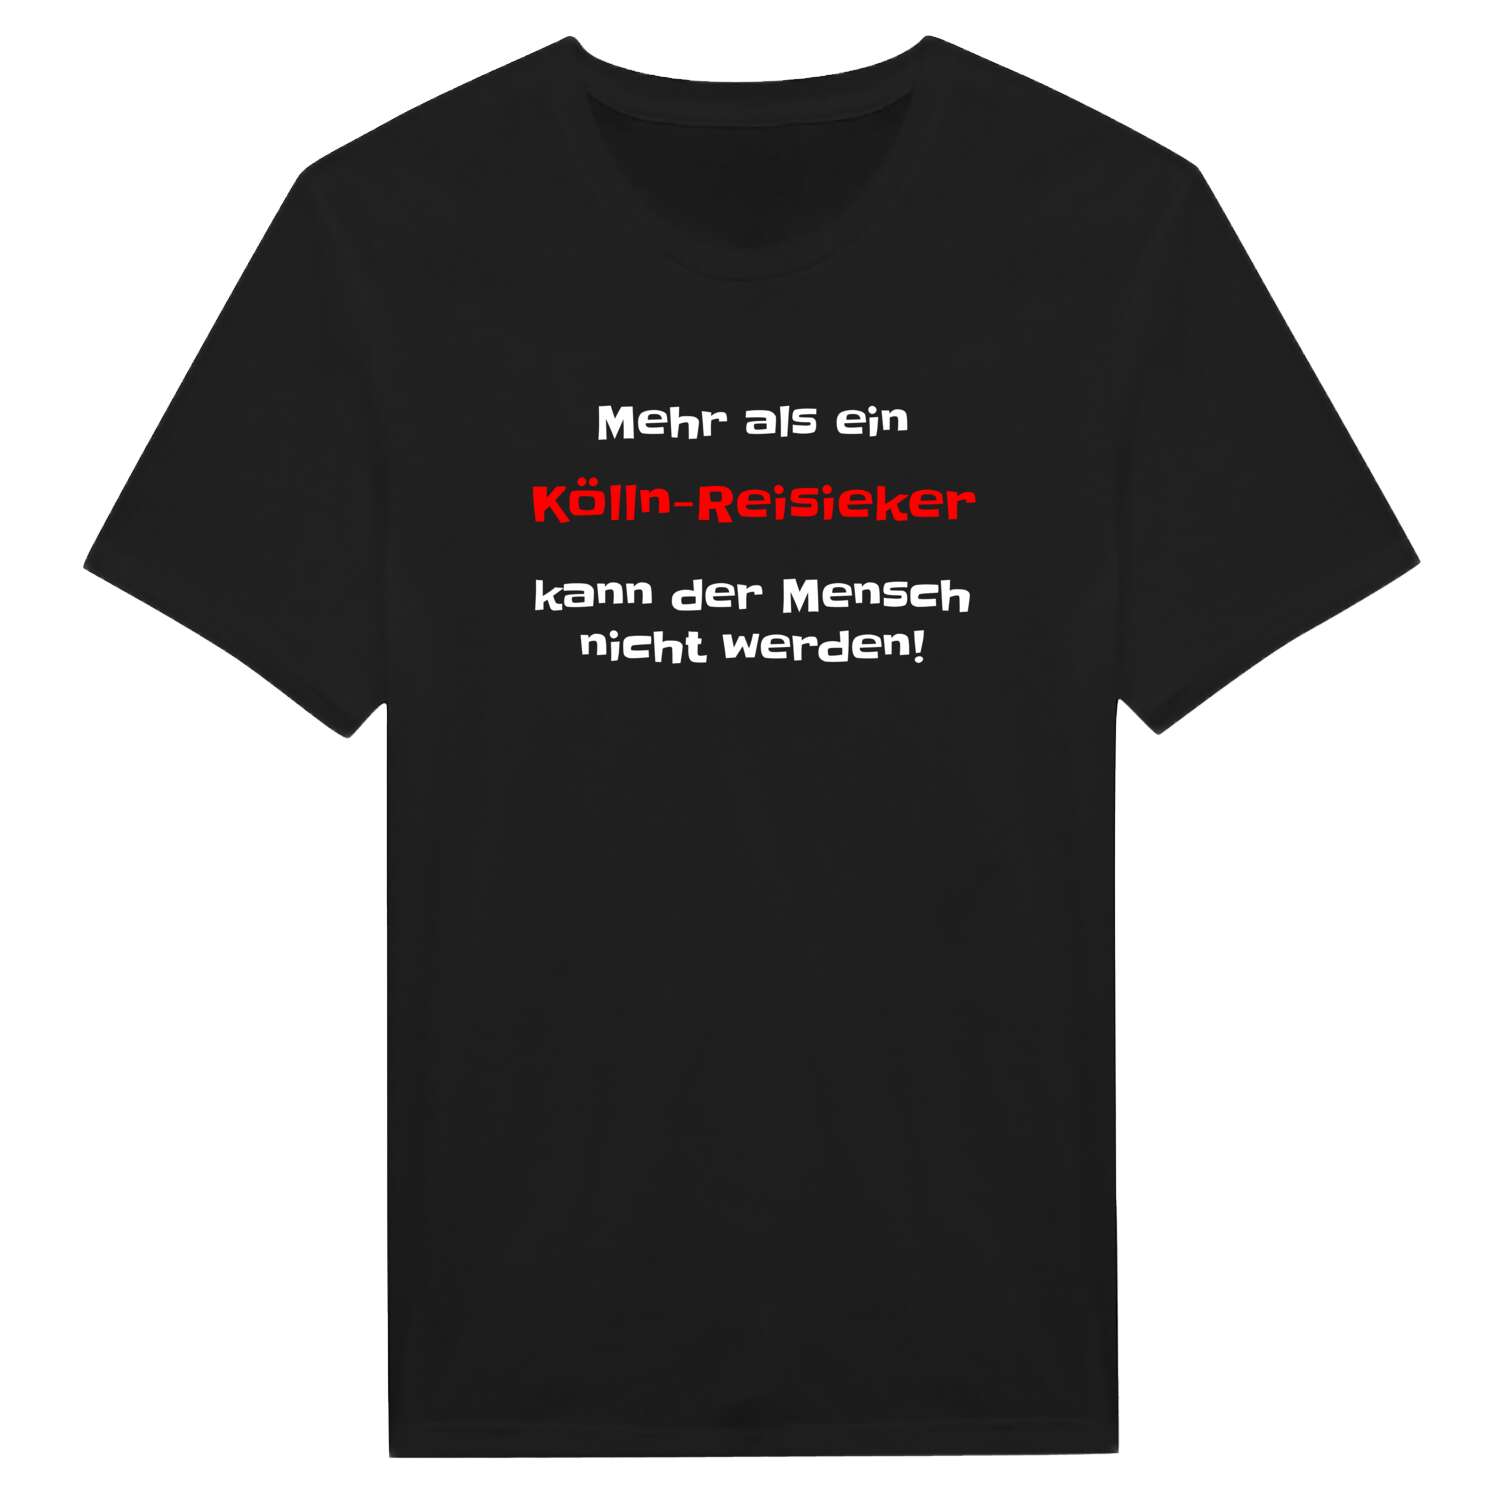 Kölln-Reisiek T-Shirt »Mehr als ein«